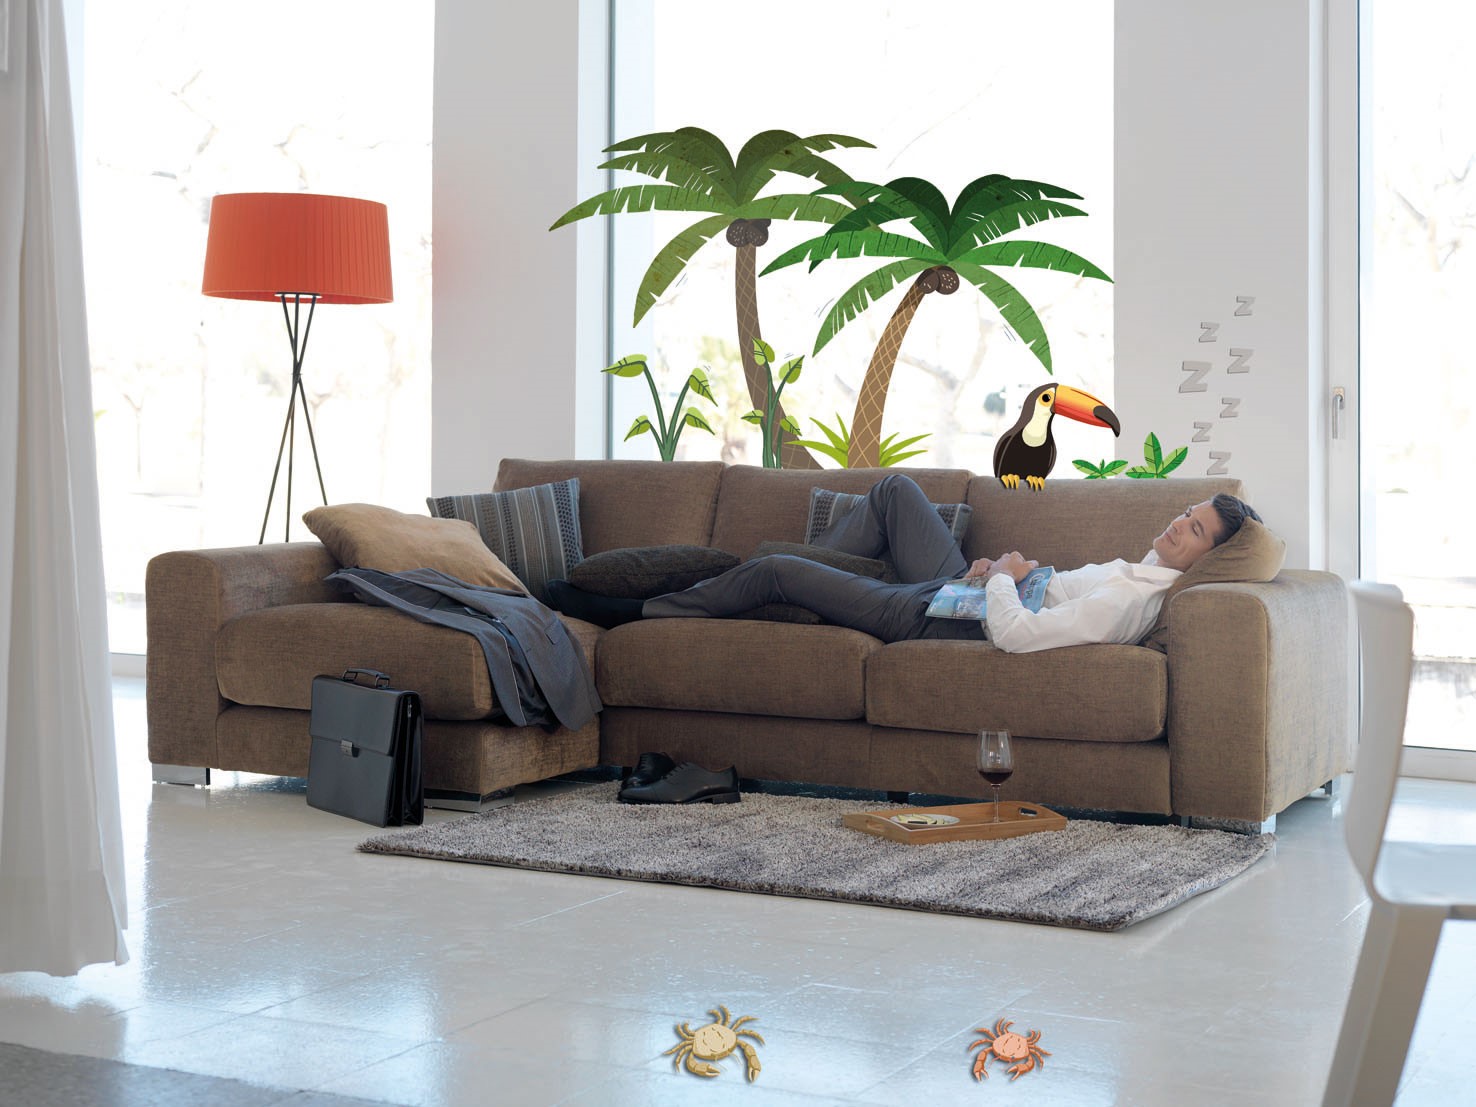 Porqué no es bueno dormir en el sofá? - Blog Terxy®